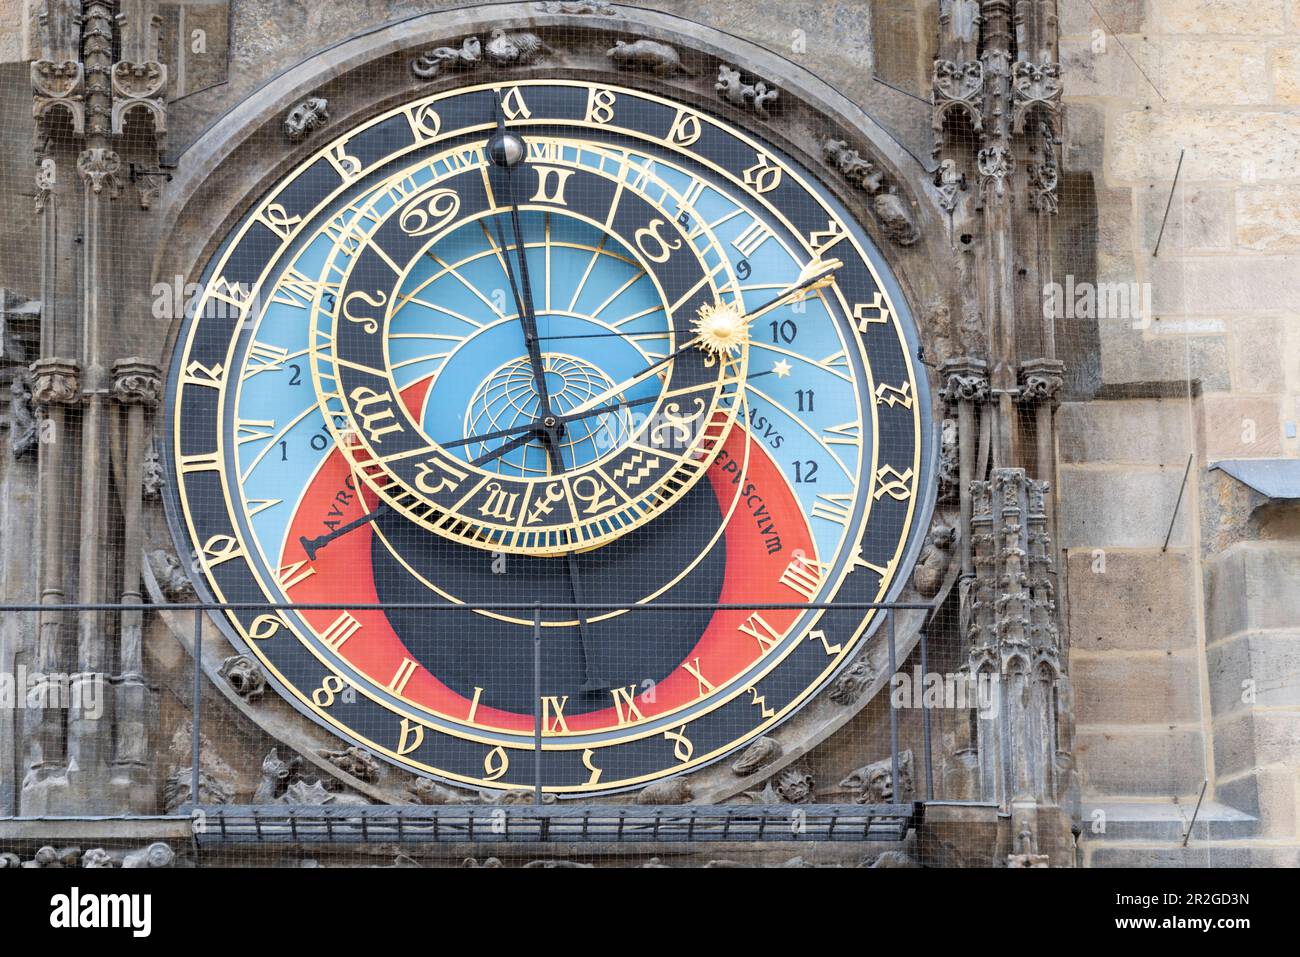 Astronomische Uhr, Altes Rauthaus, Altstädter Ring, Prag, Tschechische Republik Stockfoto